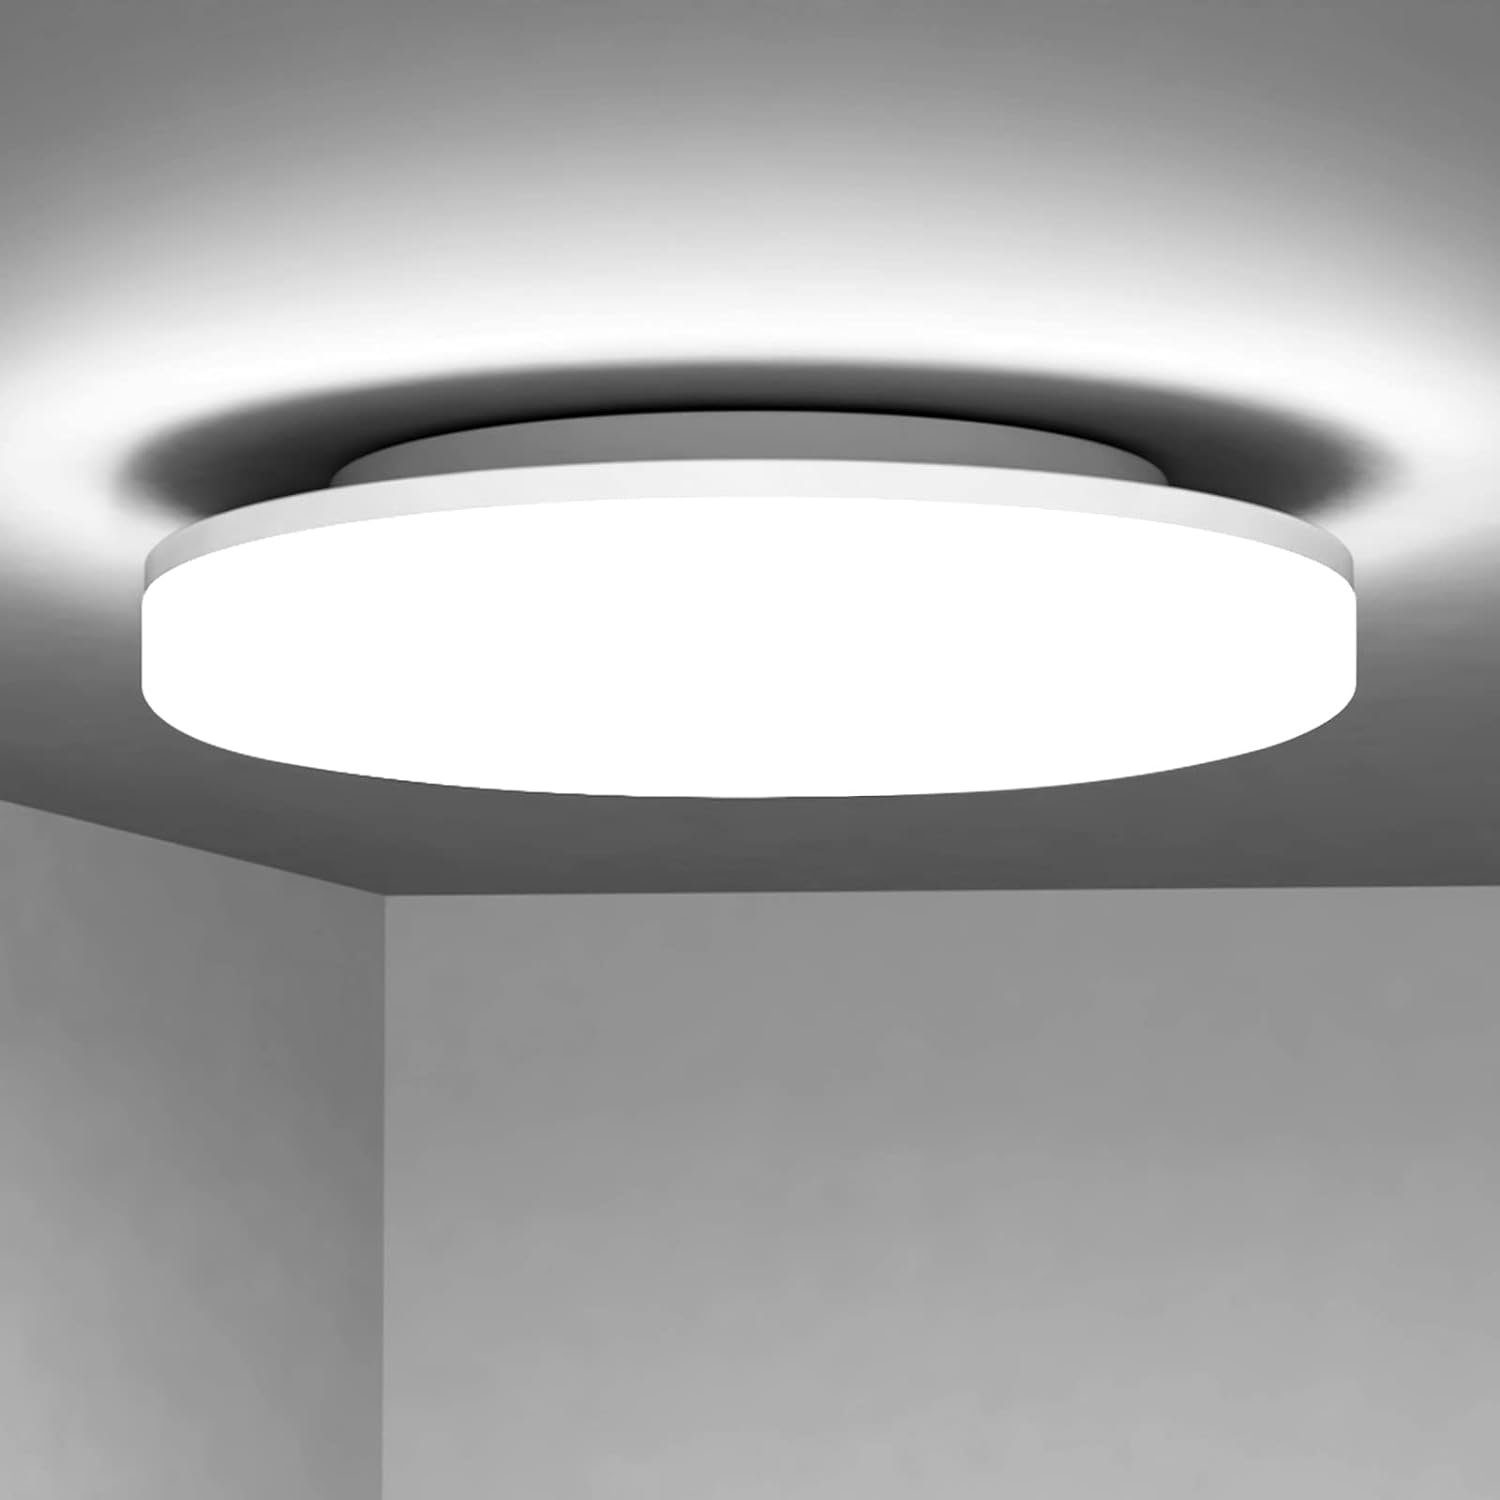 LED Küche 27*4.8cm, 24W fest LED Kaltesweiß Panel Badezimmer Nettlife Wohnzimmer integriert, IP54 Wasserfest, Kaltesweiß, Weiß Decke Deckenlampe Deckenleuchte Balkon Schlafzimmer Flur